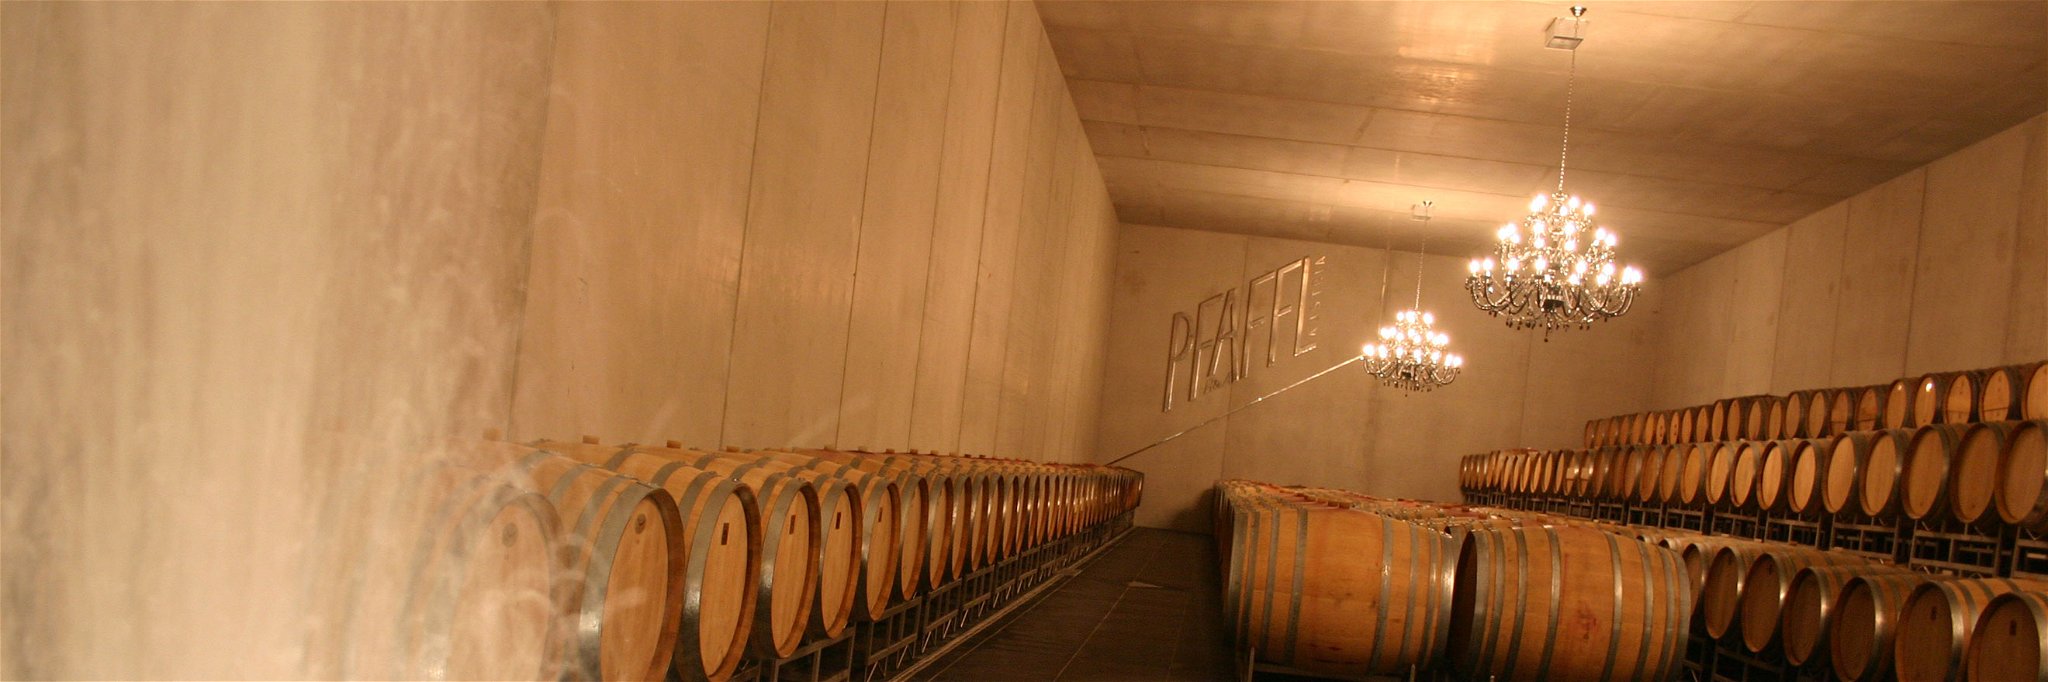 Das Weingut Pfaffl holt den »Wine Star Award« nach Österreich.